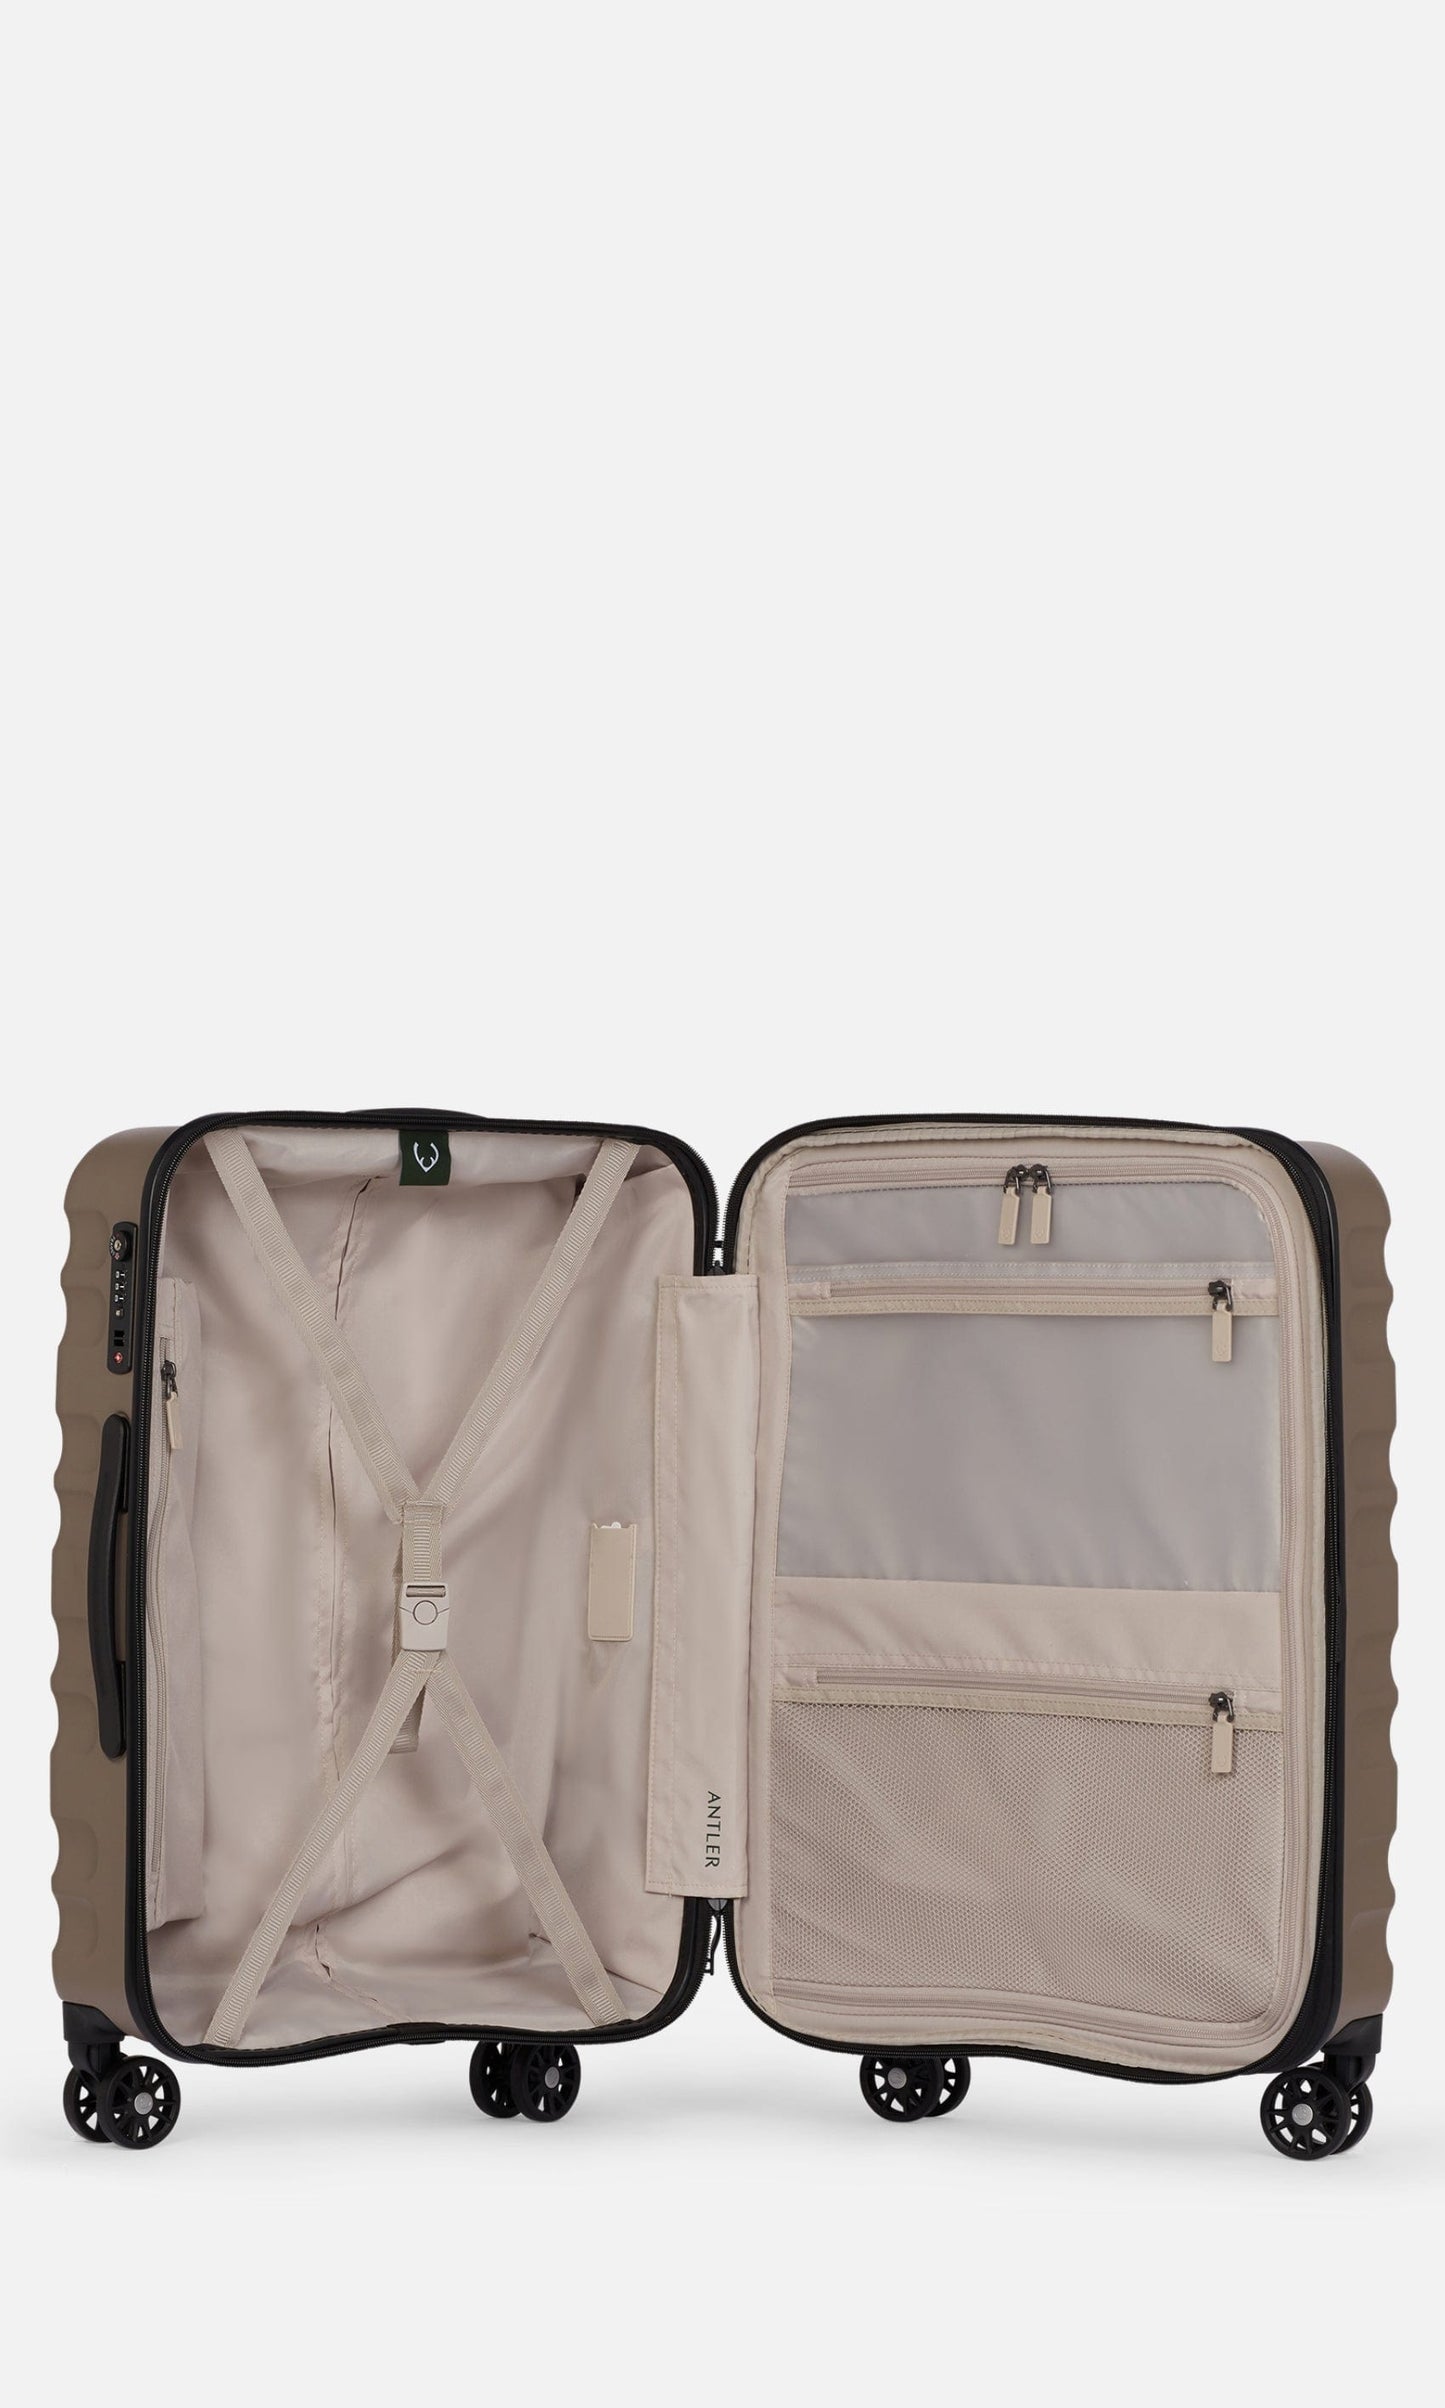 Antler Luggage -  Clifton medium in oak brown - Hard Suitcases Clifton Medium Suitcase Brown | Hard Suitcase | Antler UK